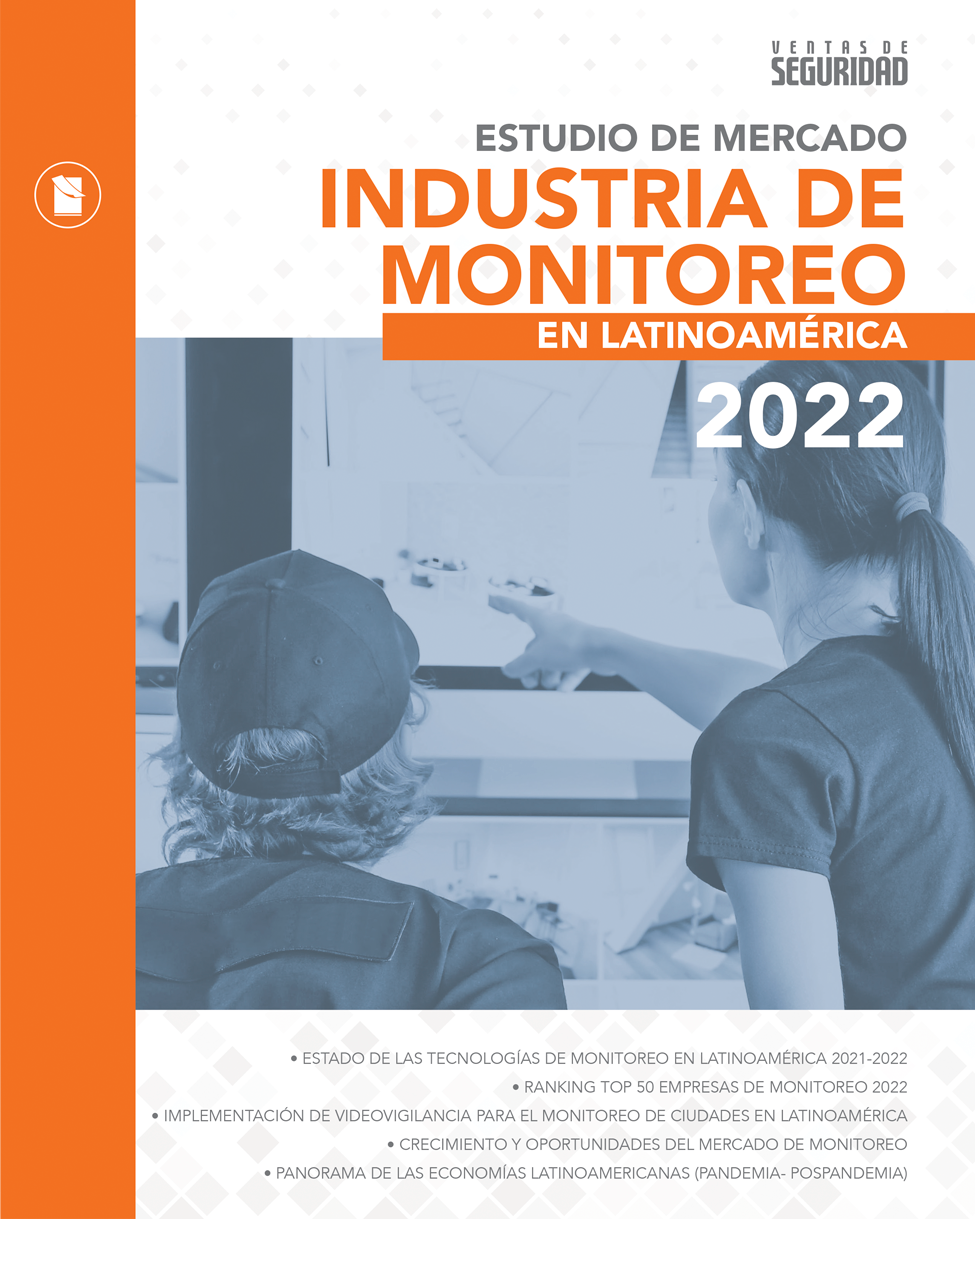 ESTUDIO DE MERCADO INDUSTRIA DE MONITOREO EN LATINOAMÉRICA 2022 Image